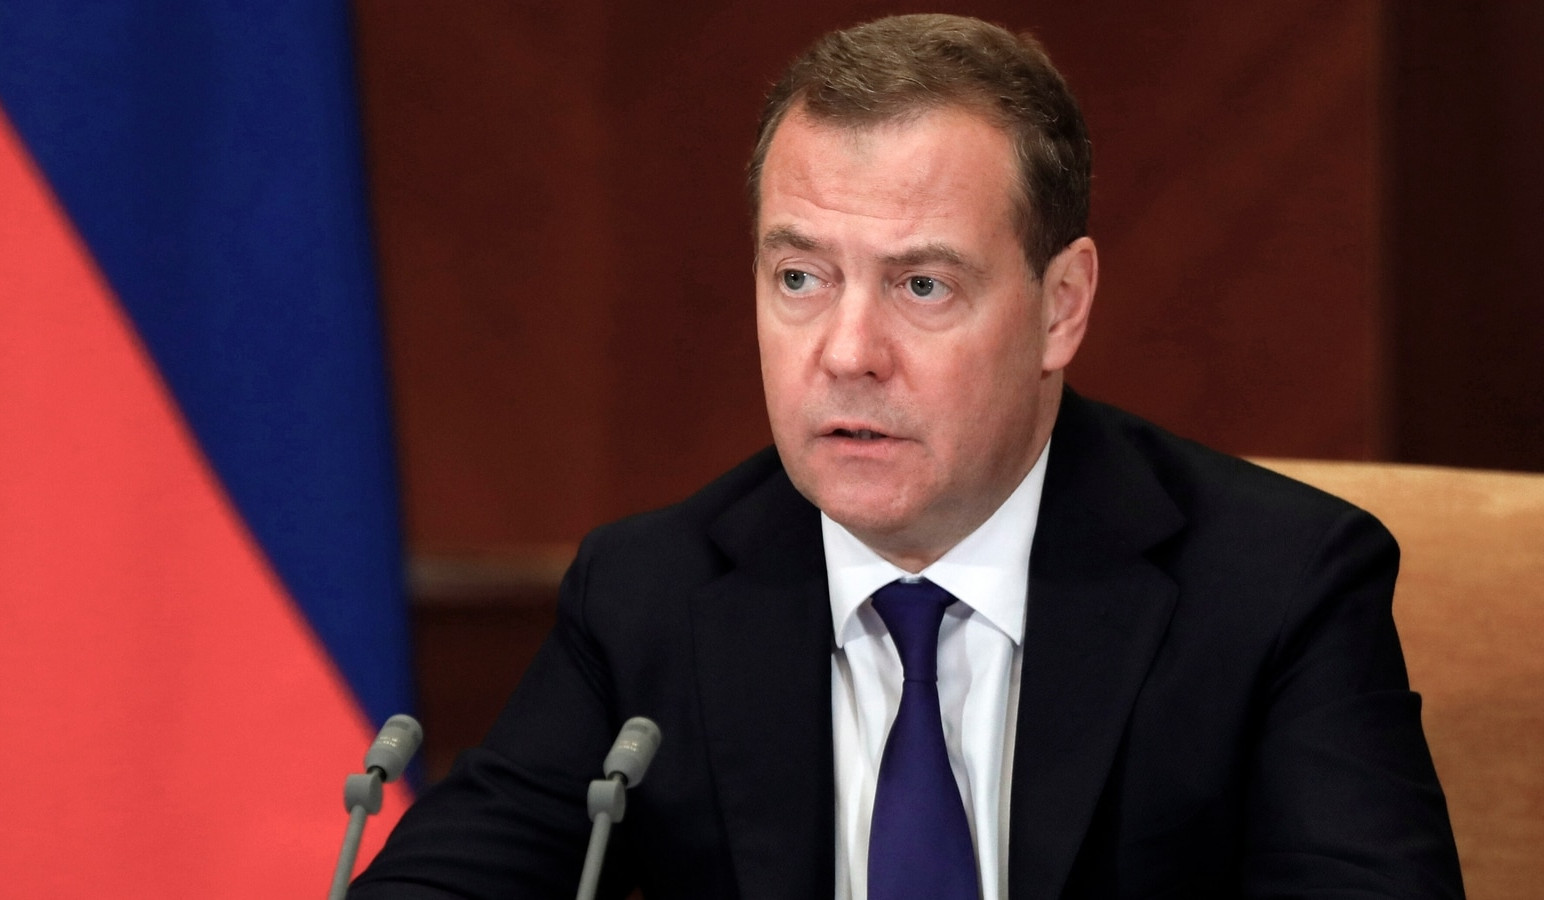 Our enemies want to weaken Russia: Medvedev